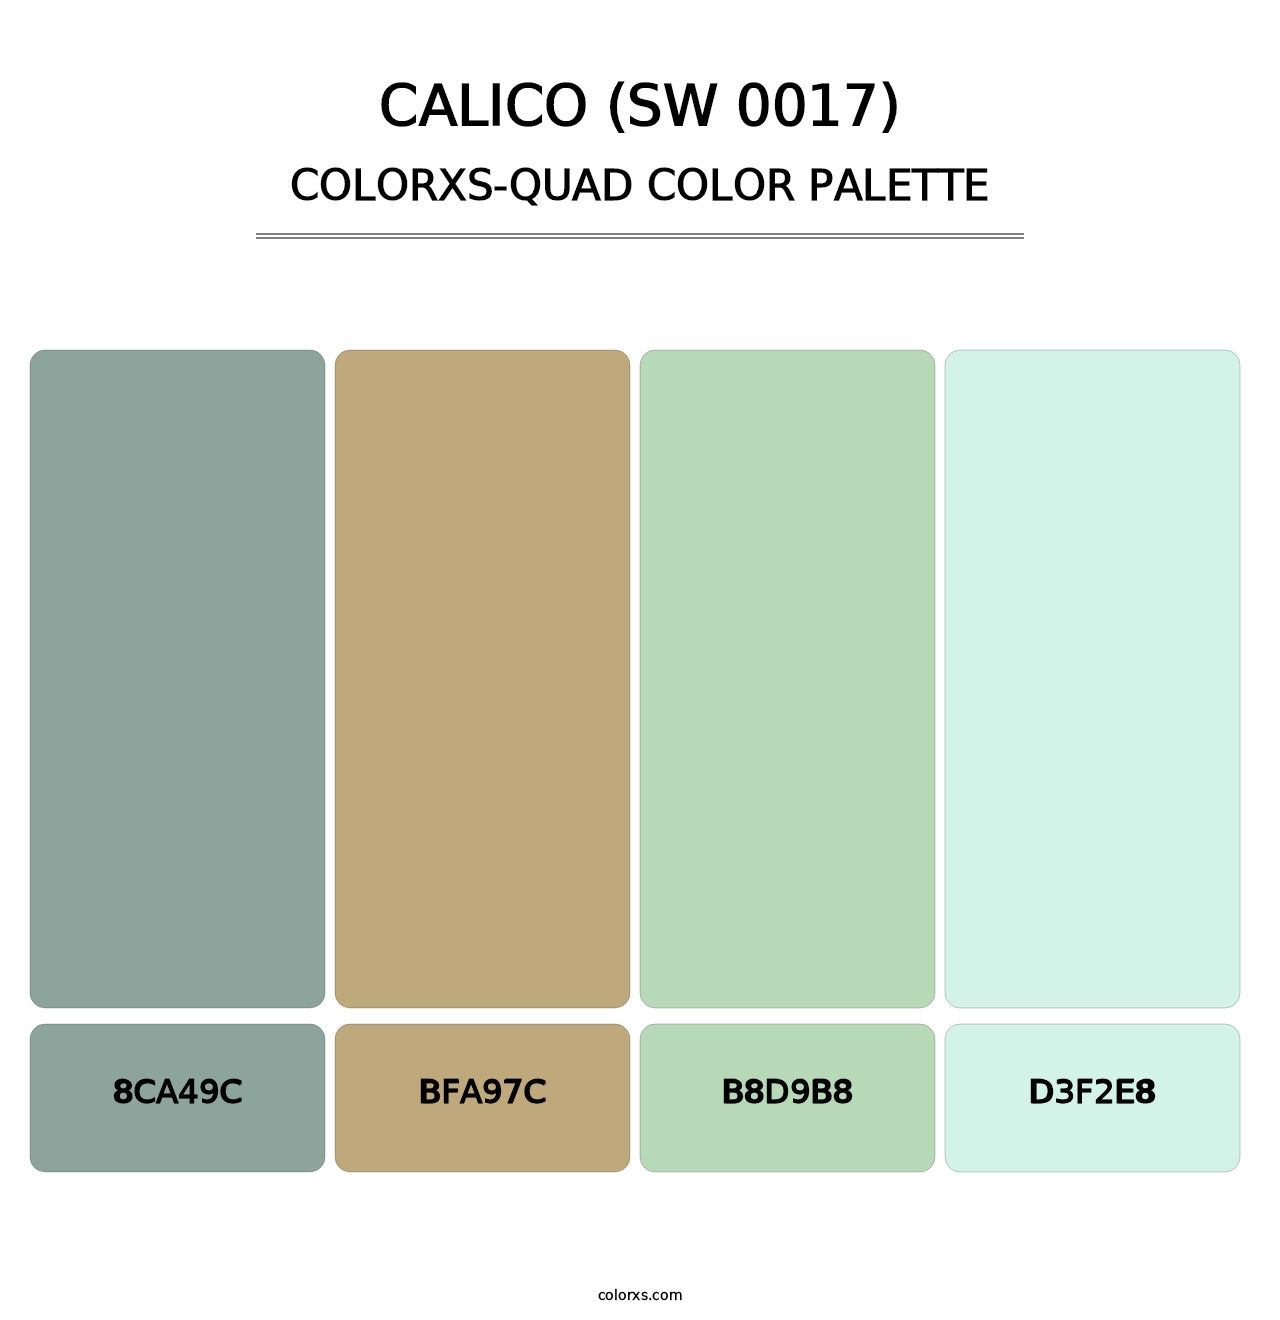 Calico (SW 0017) - Colorxs Quad Palette